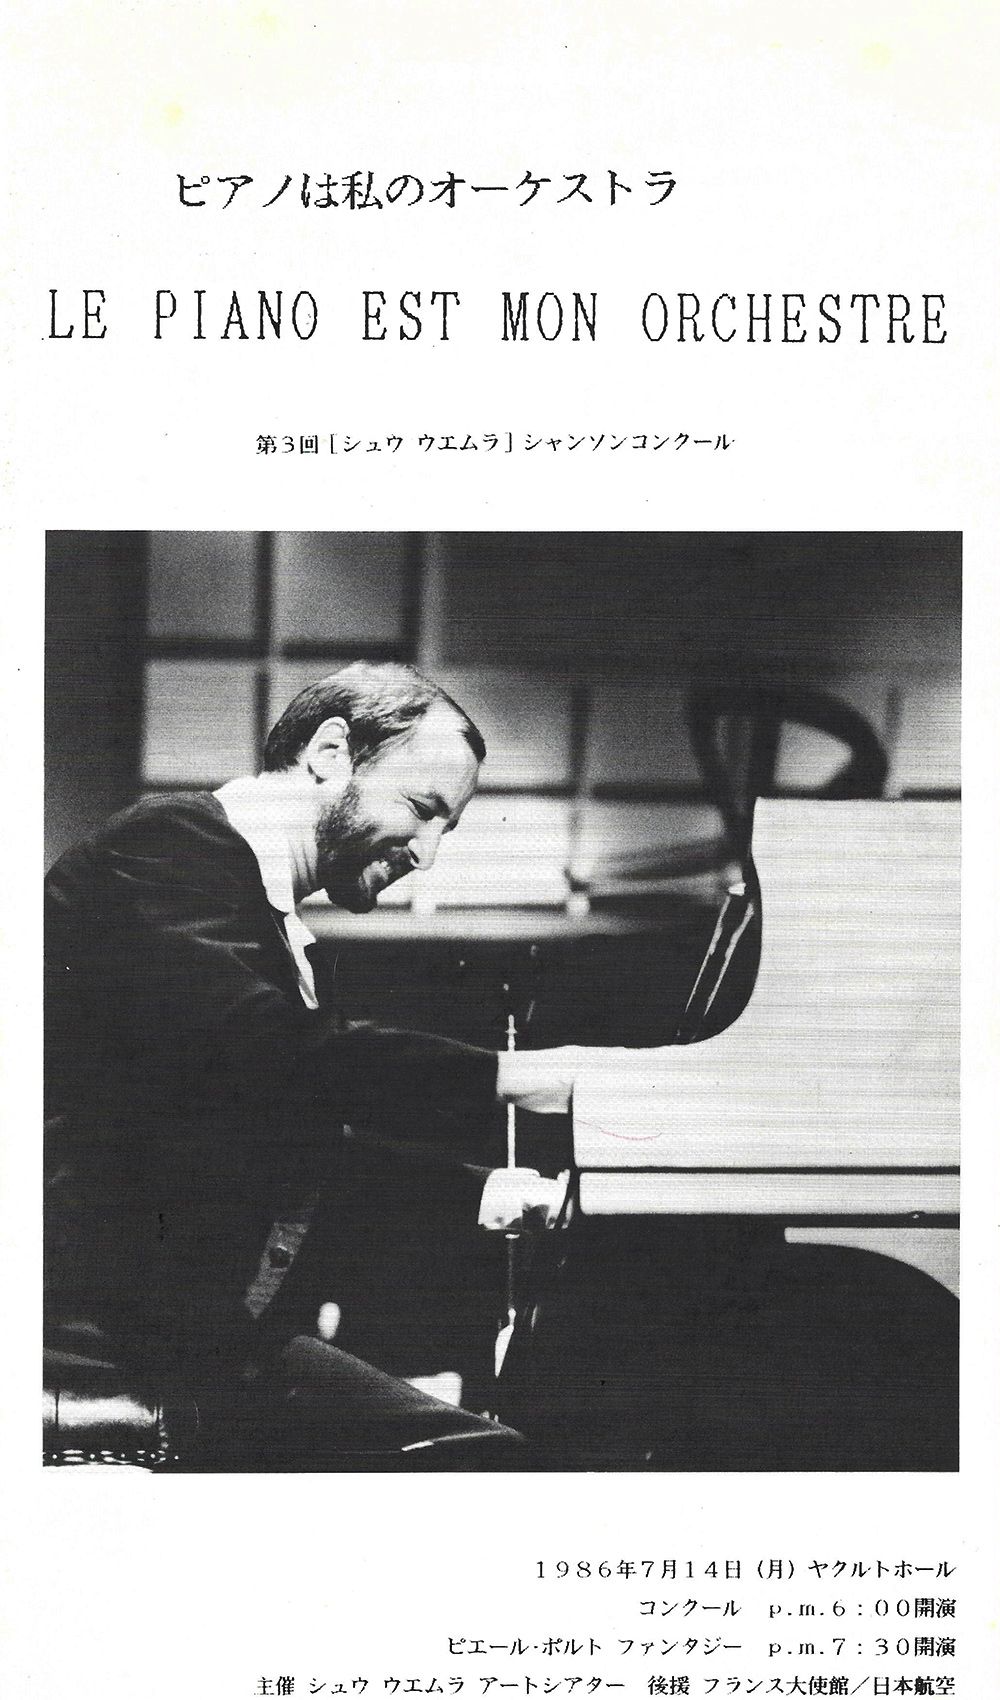 Le Piano est Mon Orchestre, Japan